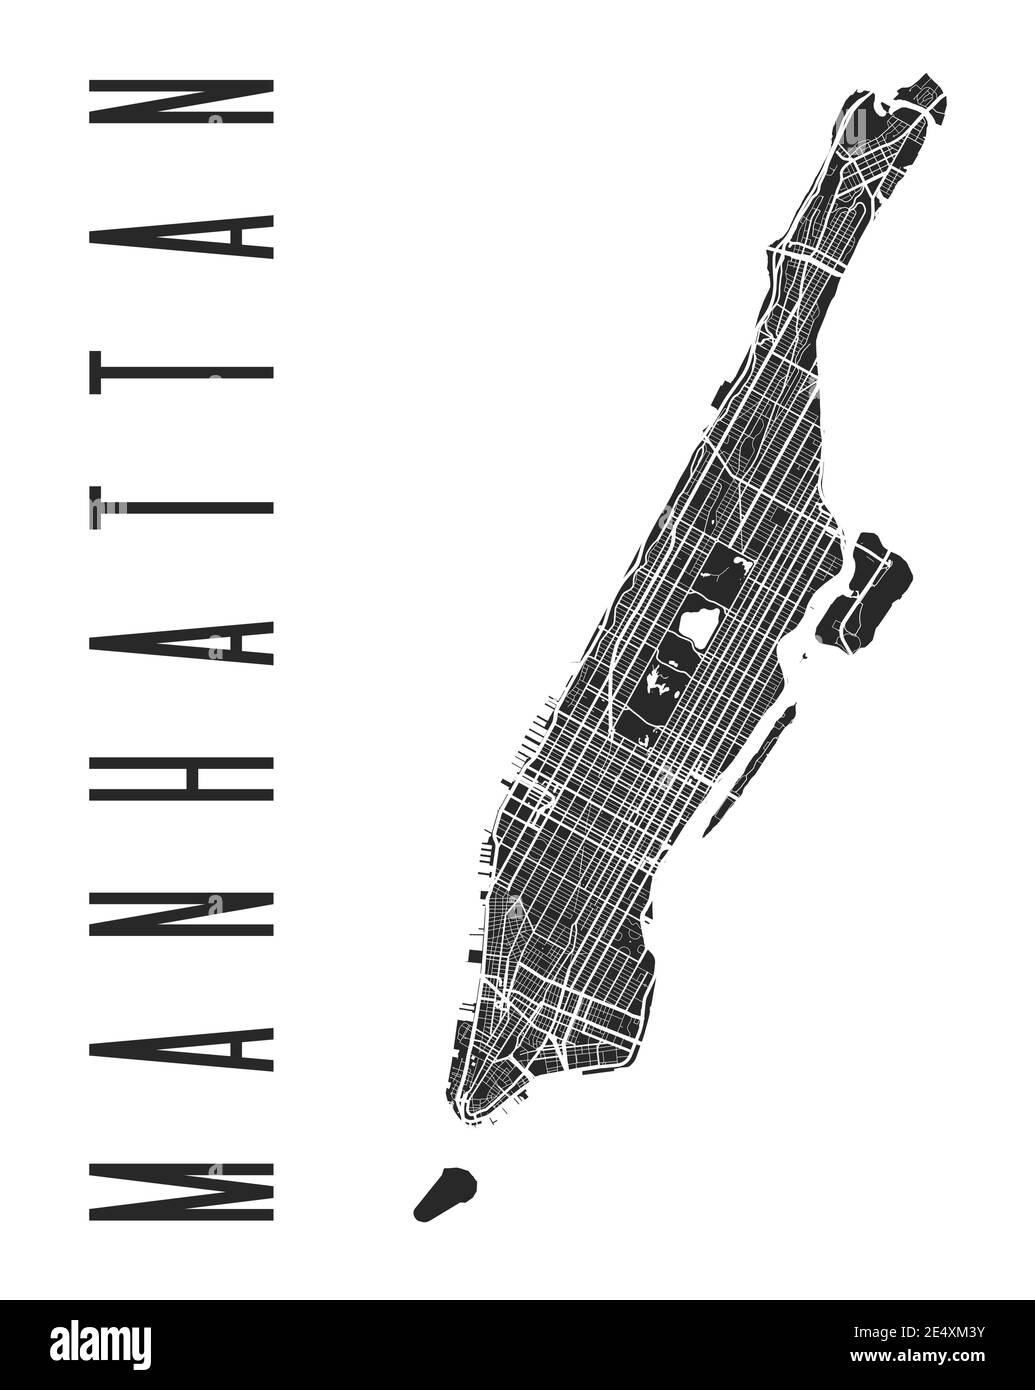 Affiche de Manhattan. Plan des rues du quartier de New York. Panorama urbain aria silhouette vue aérienne, style typographique. Hudson, est, Harlem, marbre Illustration de Vecteur